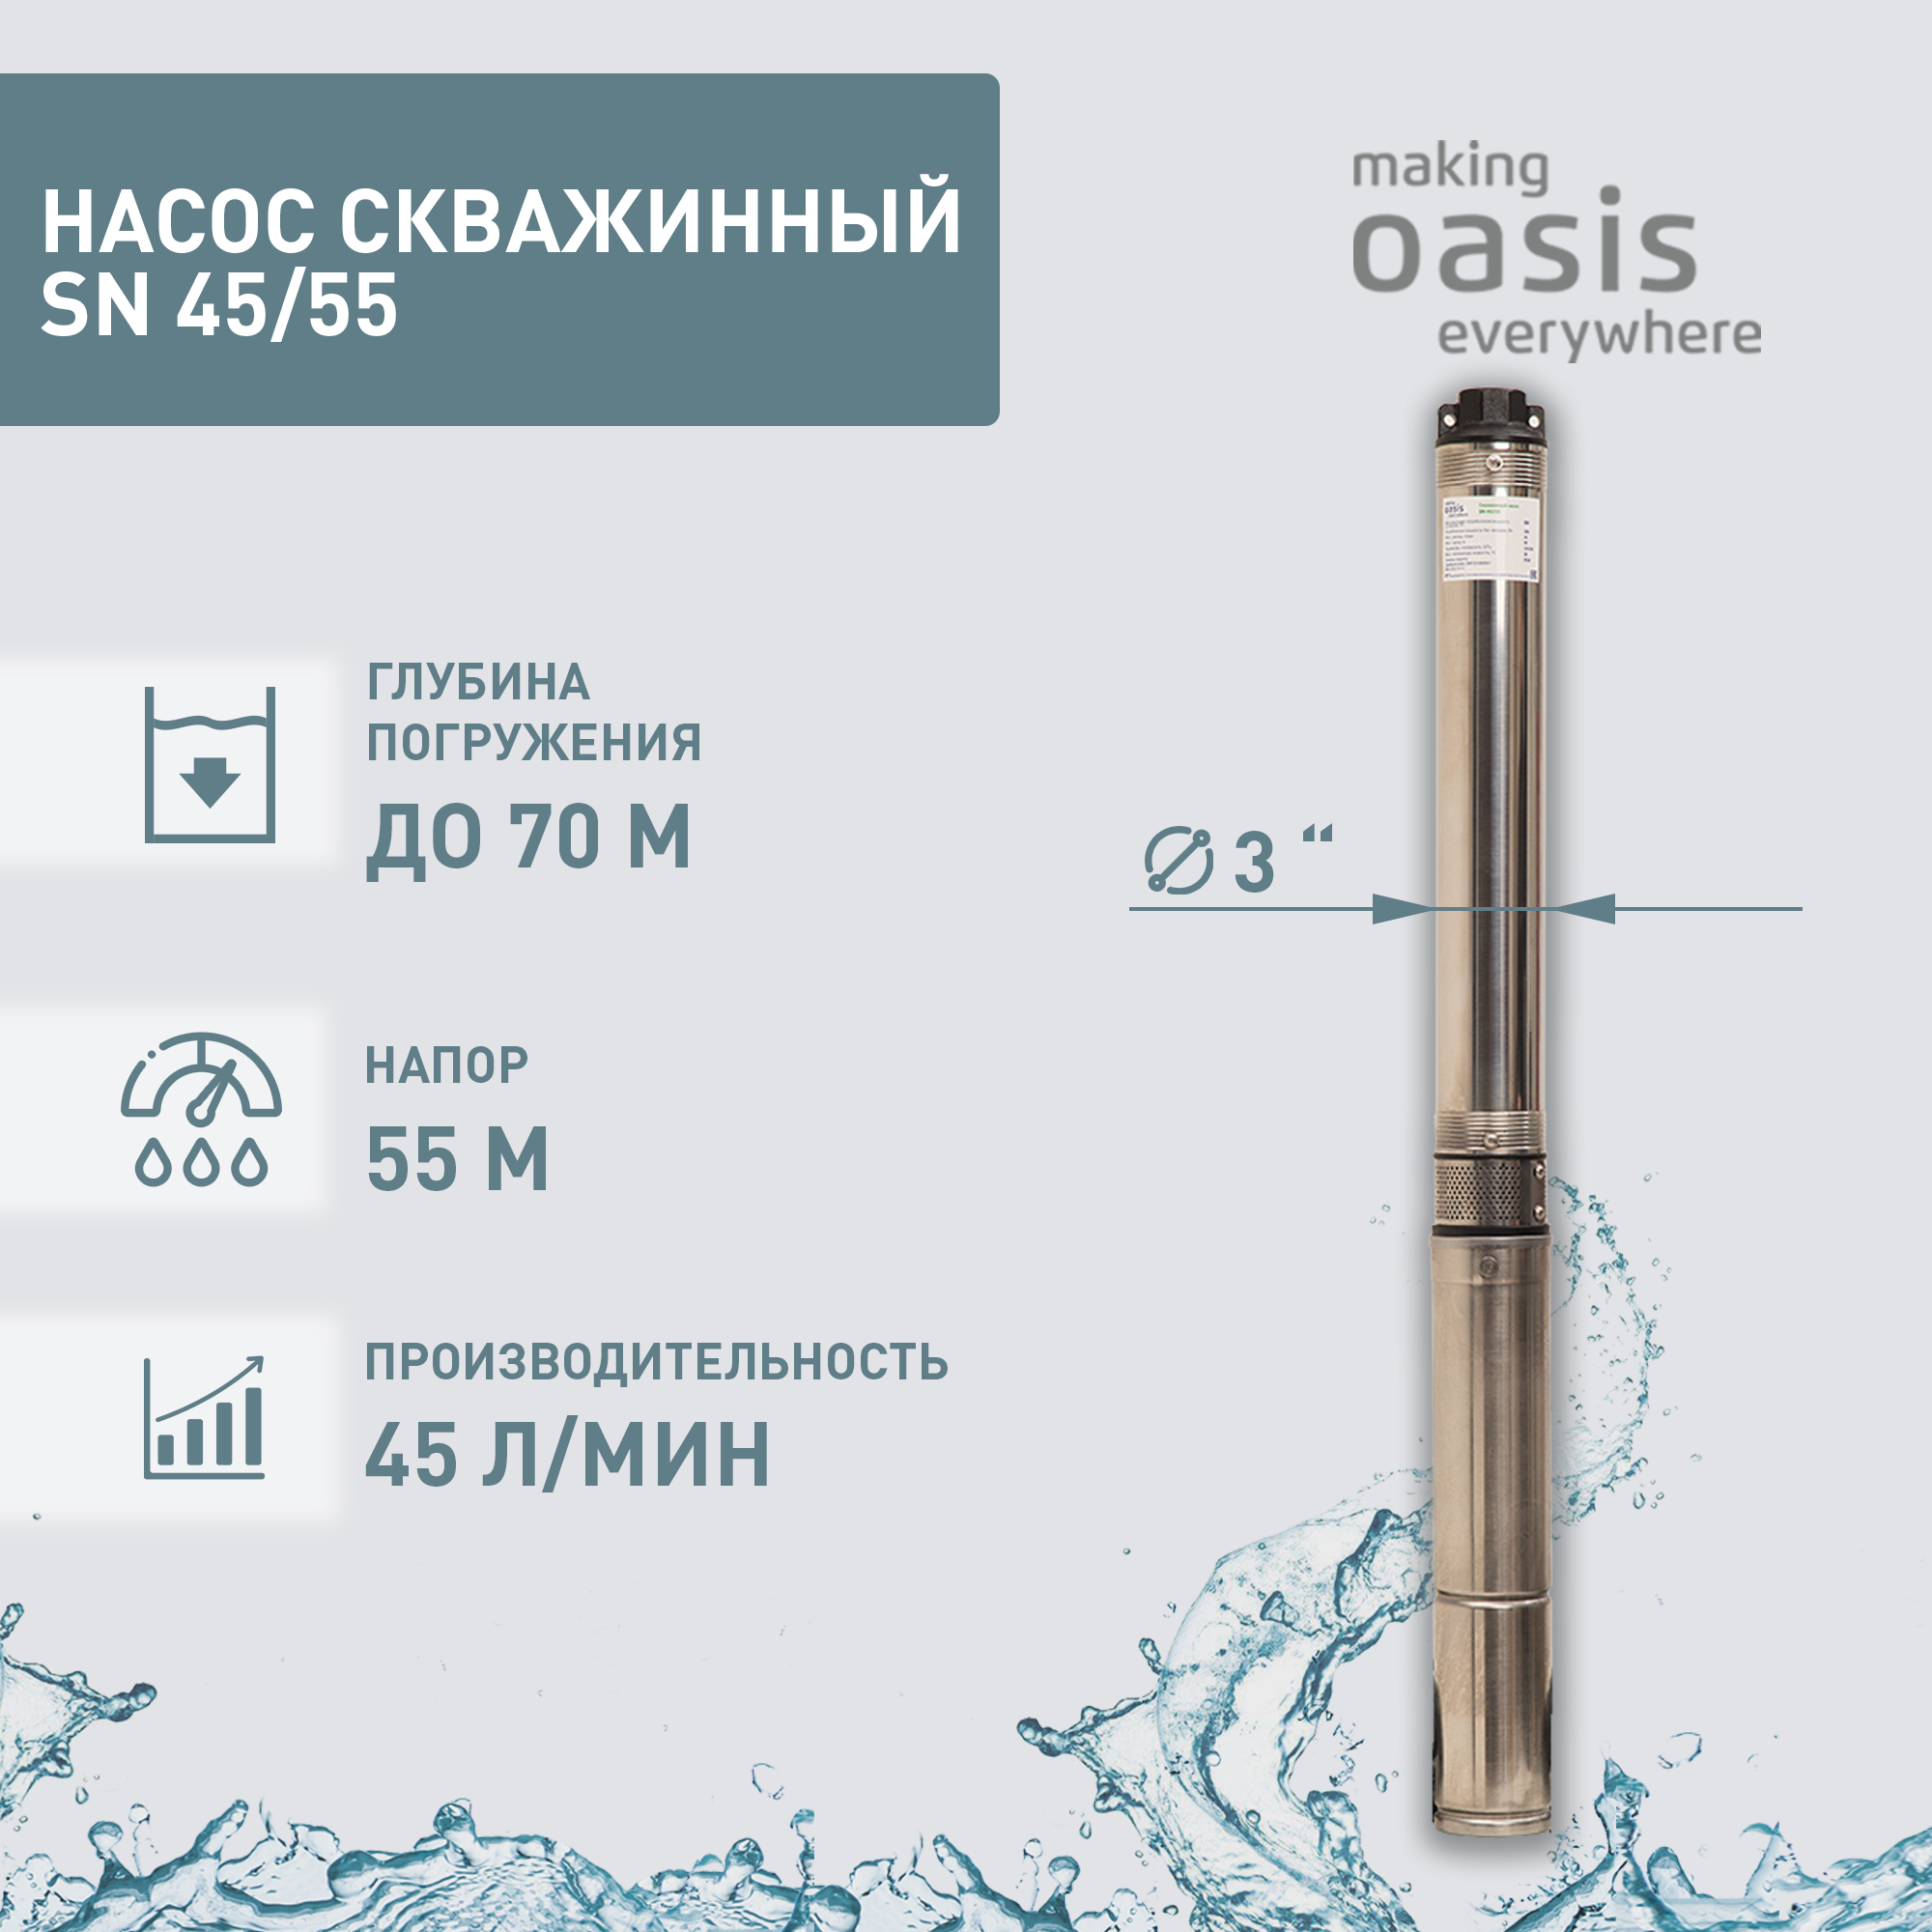 Насос погружной скважинный для воды водяной making OASIS everywhere SN 45/55